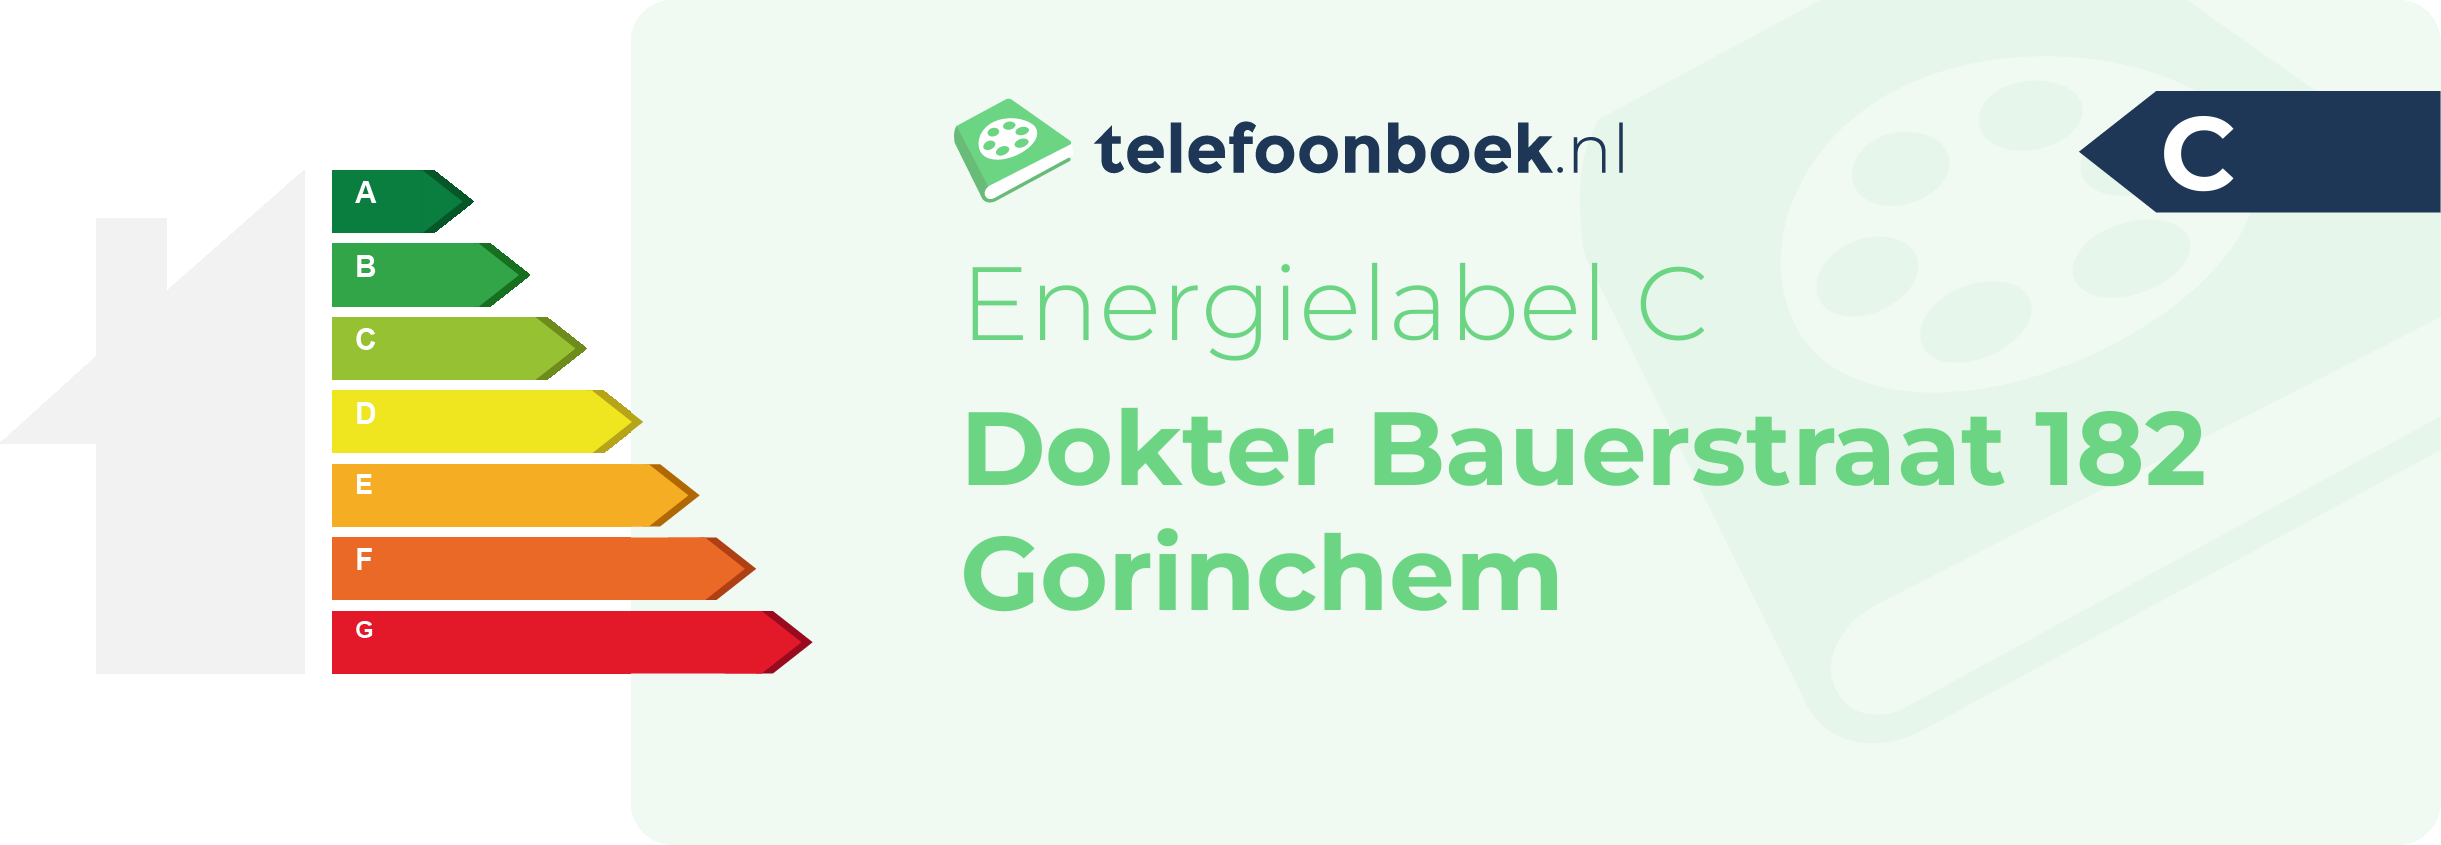 Energielabel Dokter Bauerstraat 182 Gorinchem